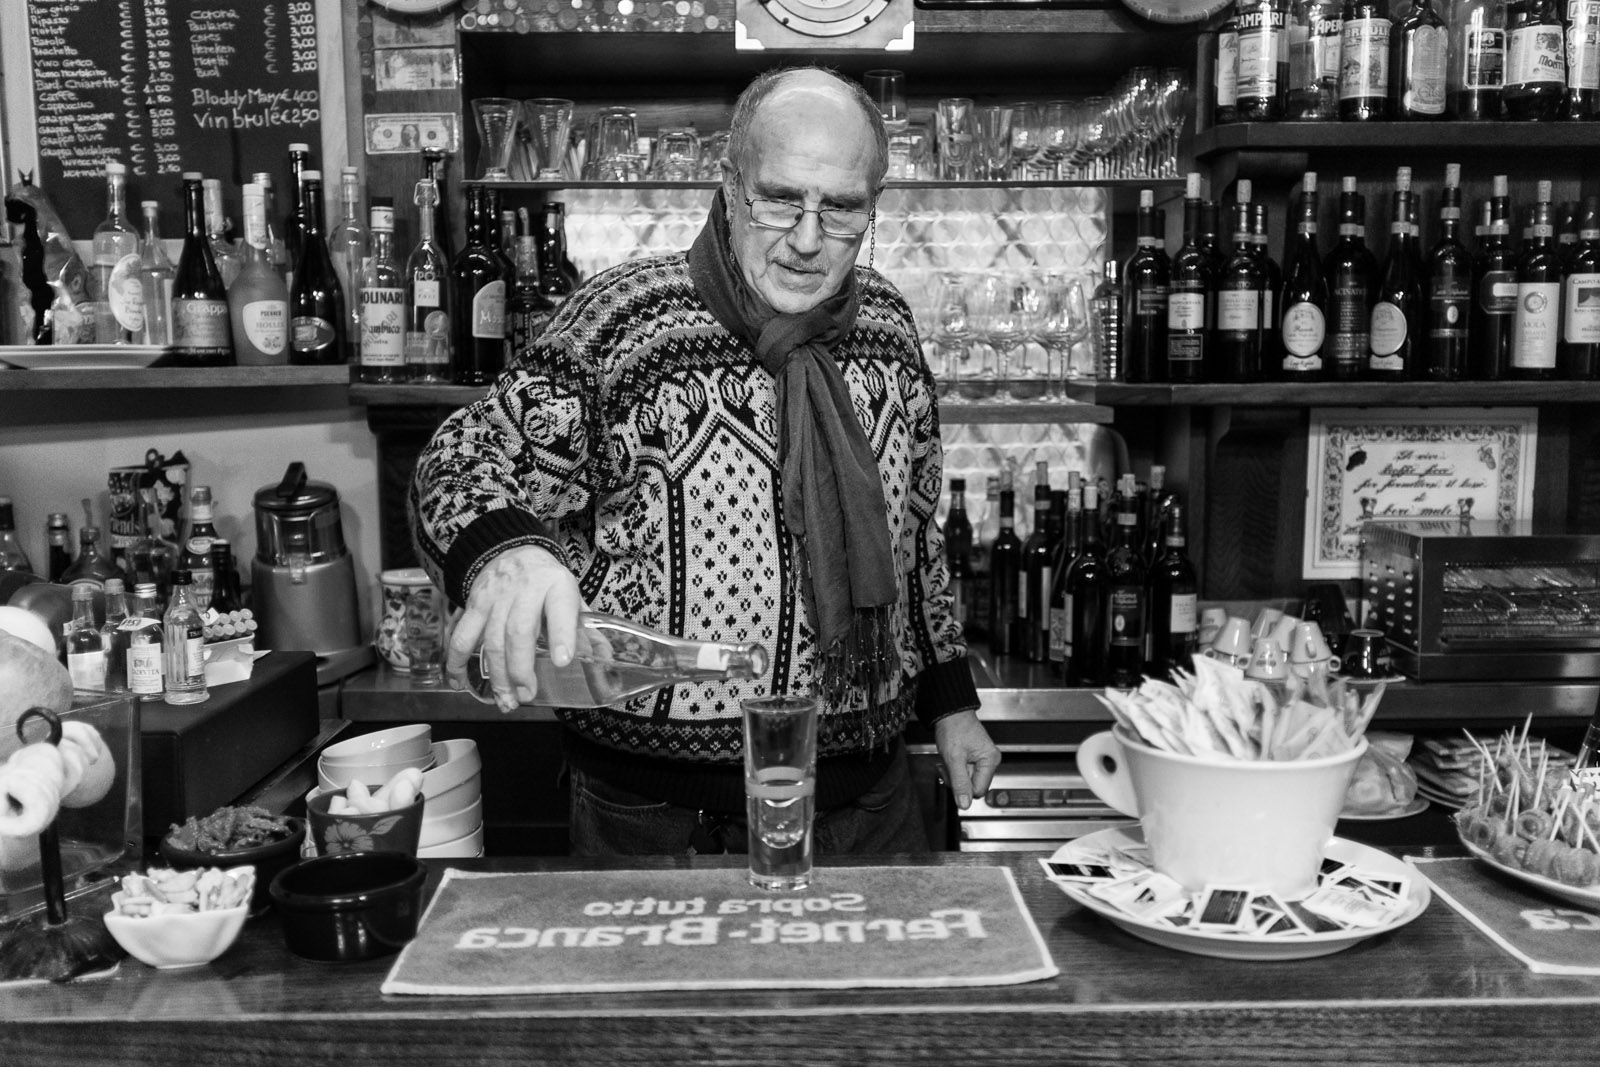 Old barman...